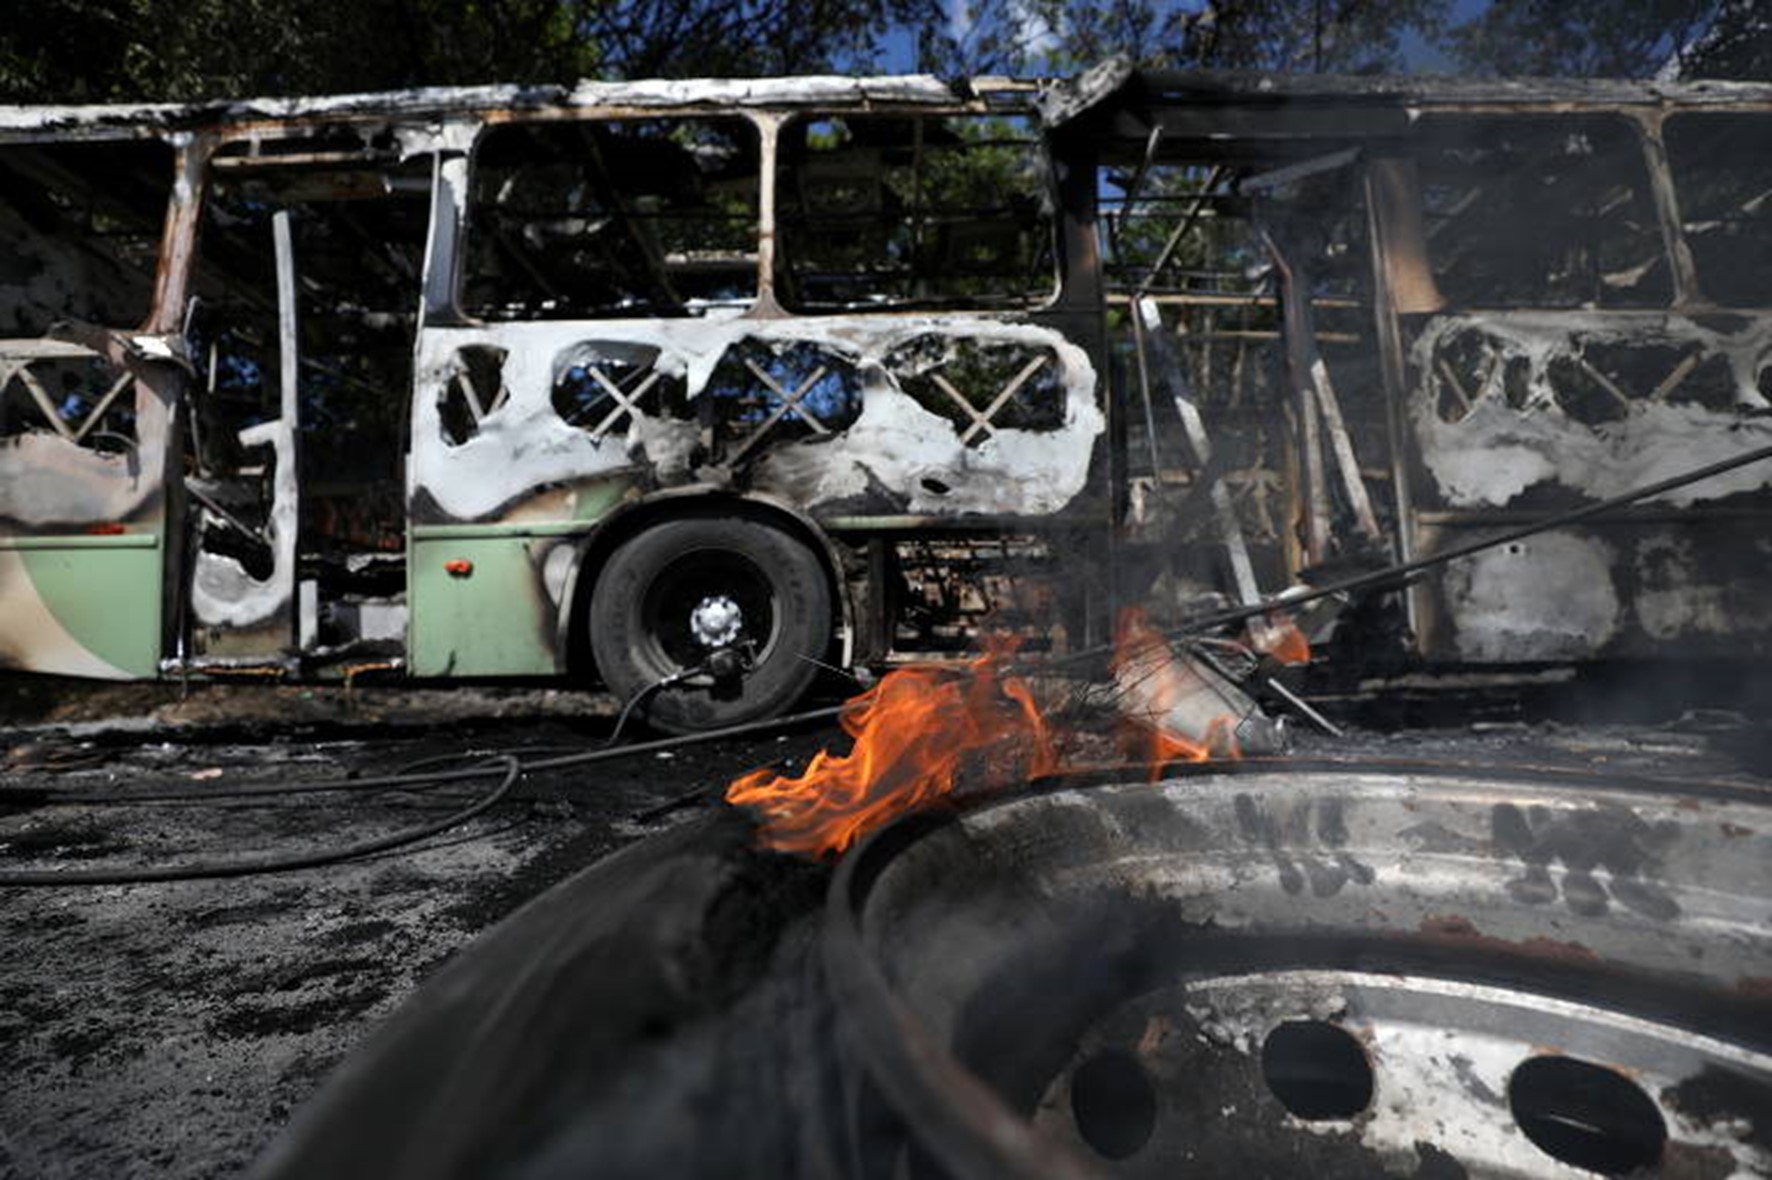 Ônibus queimado em Manaus após onda de ataques nesta madrugada